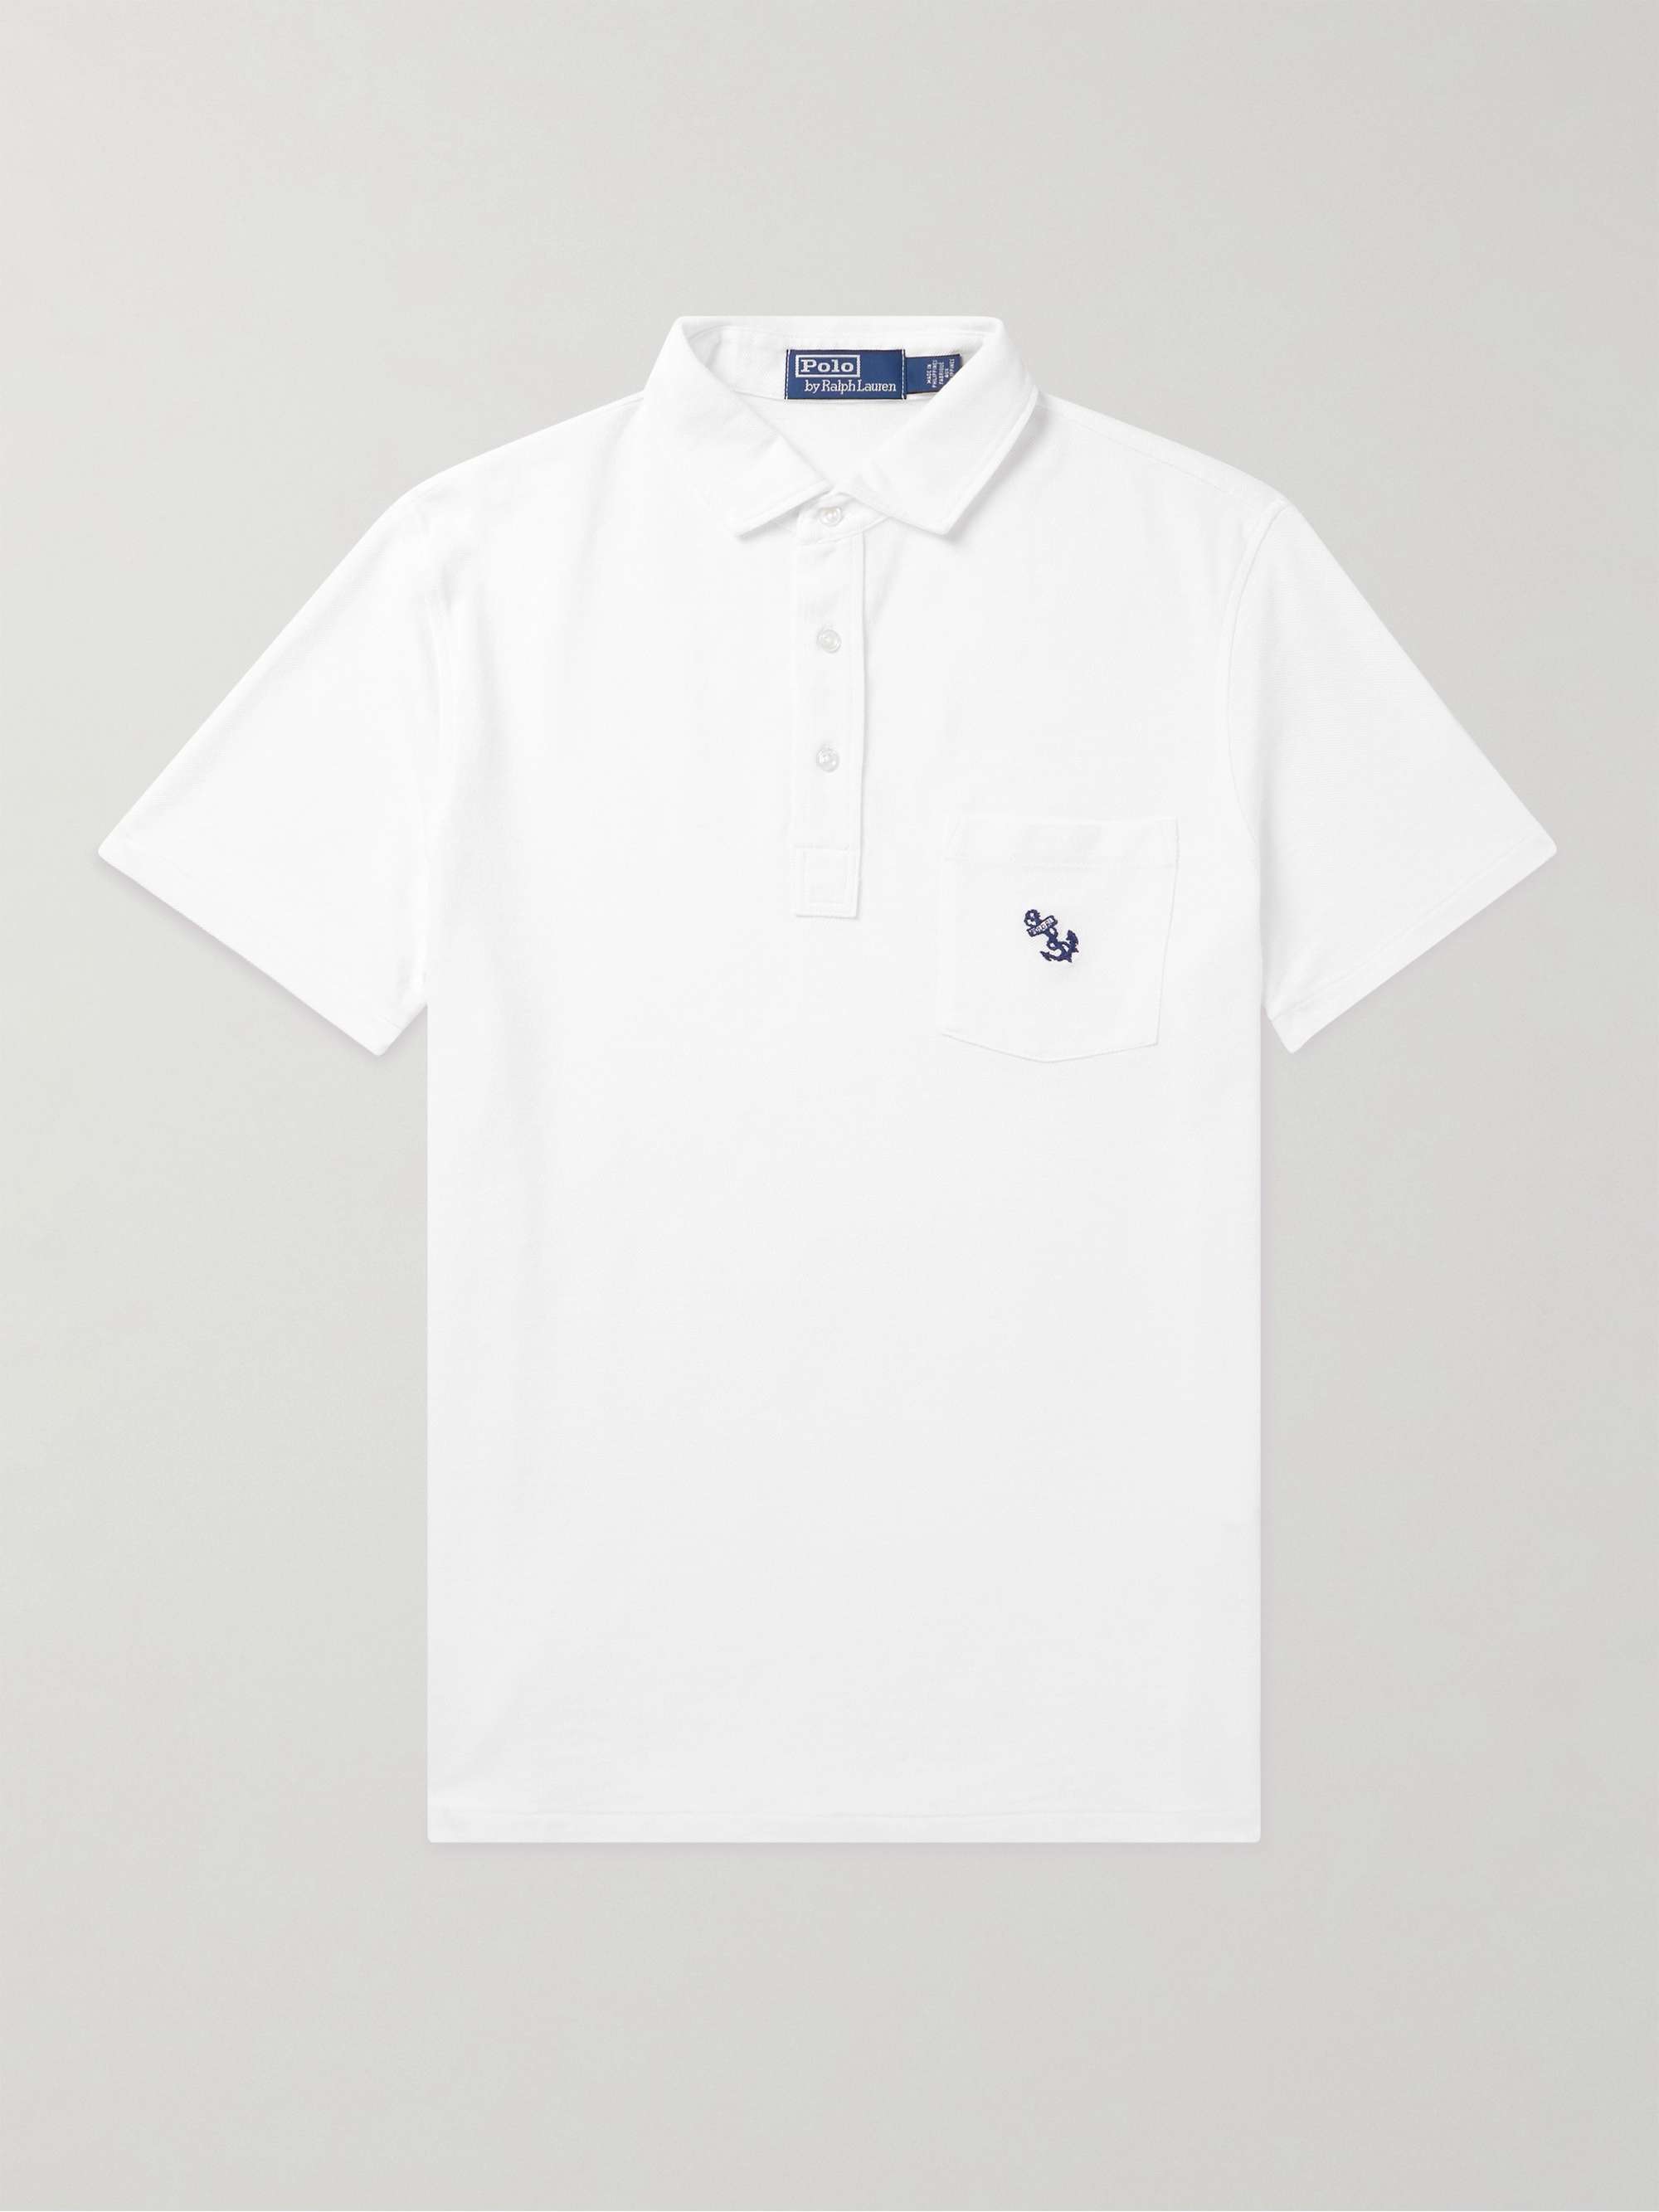 POLO RALPH LAUREN Slim-Fit Cotton-Piqué Polo Shirt for Men | MR PORTER